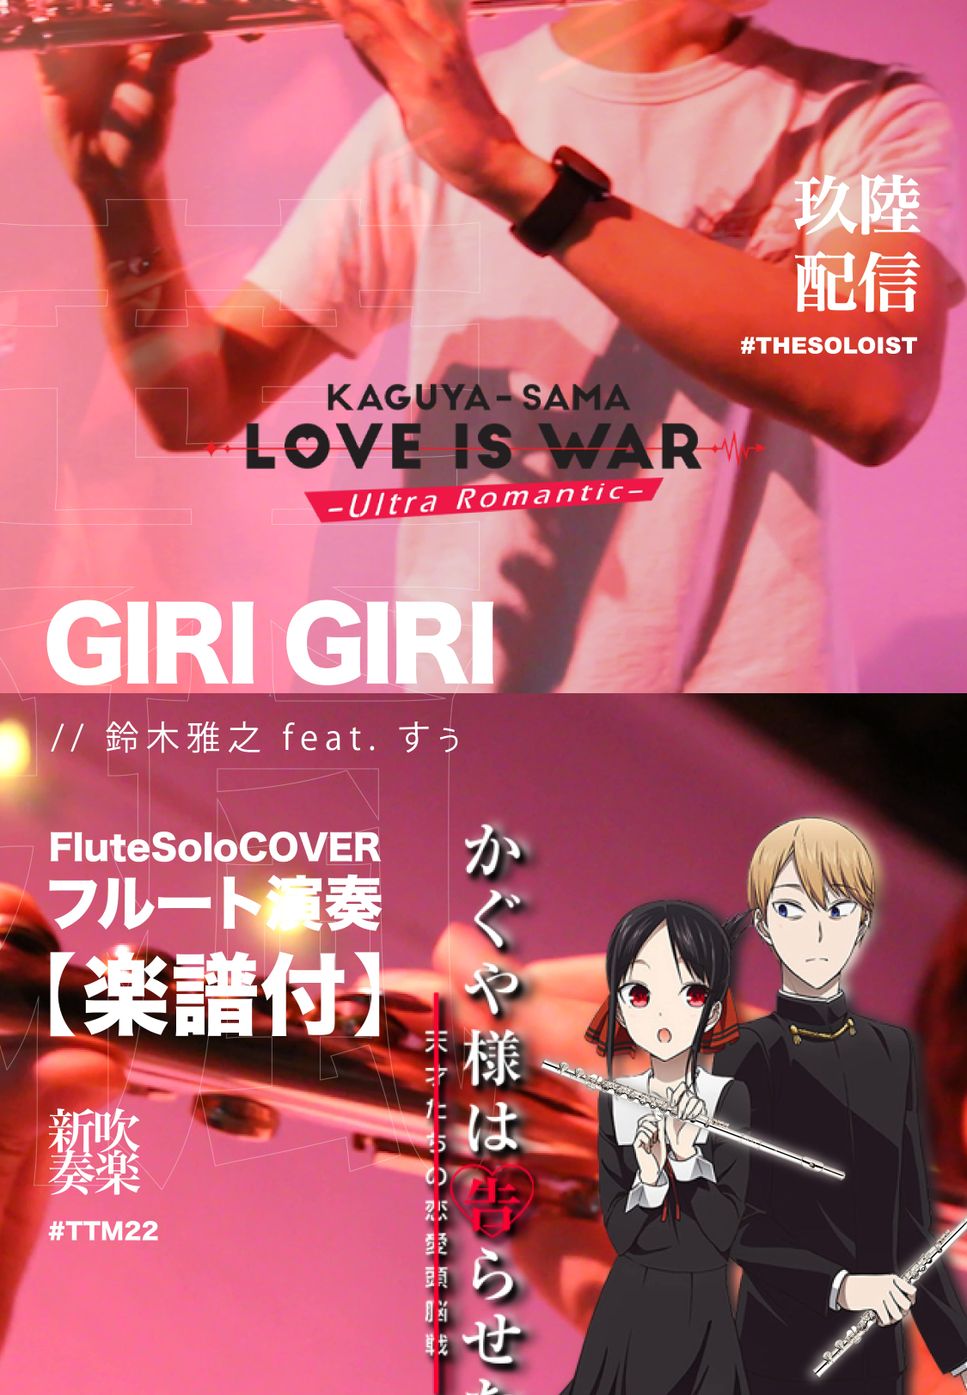 KaguyaSama Love is War S3 - GIRI GIRI (Flute solo) by FUNGYIP